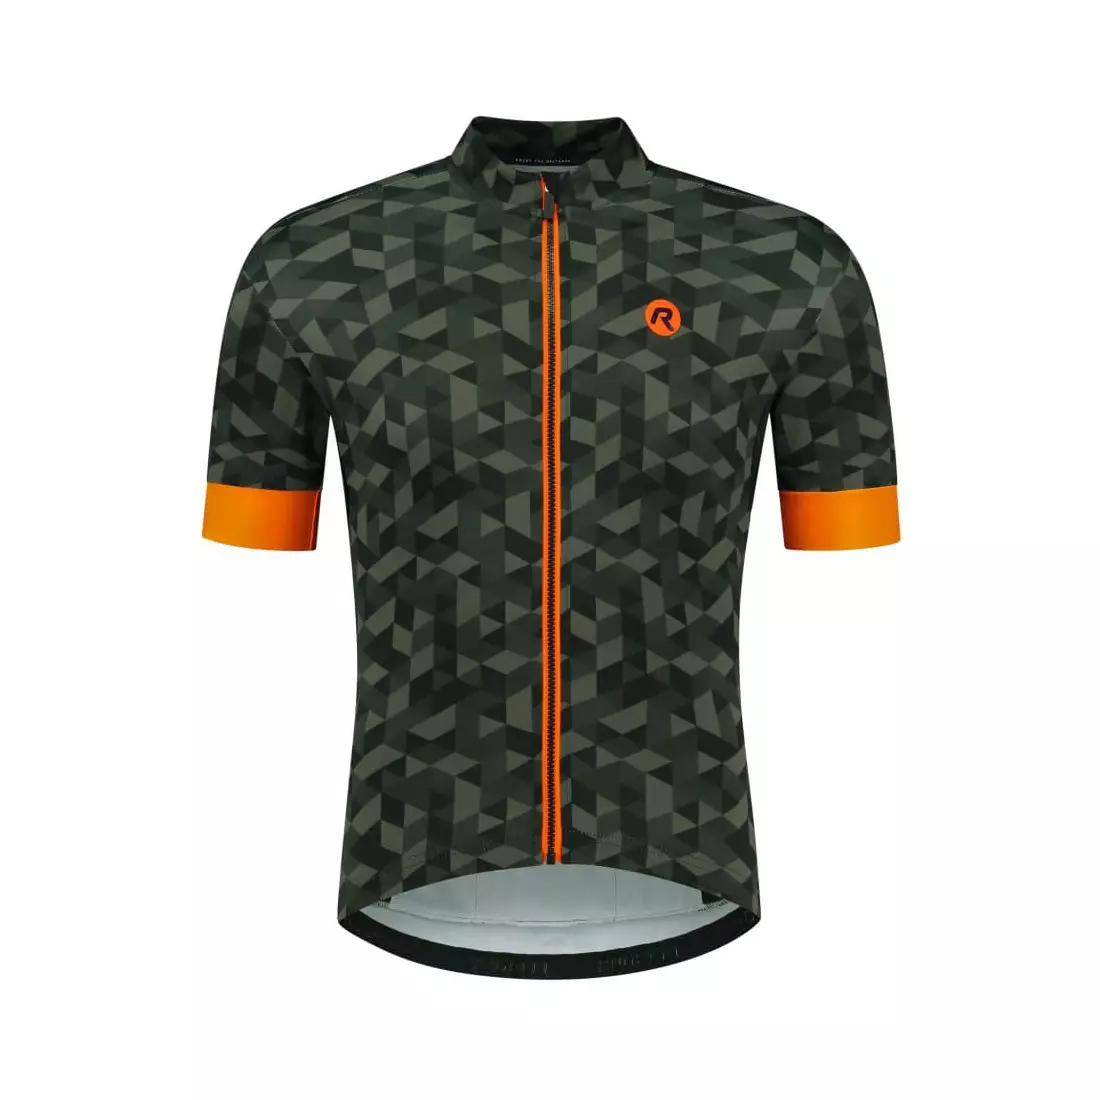 Rogelli RUBIK męska koszulka rowerowa, khaki-pomarańczowa